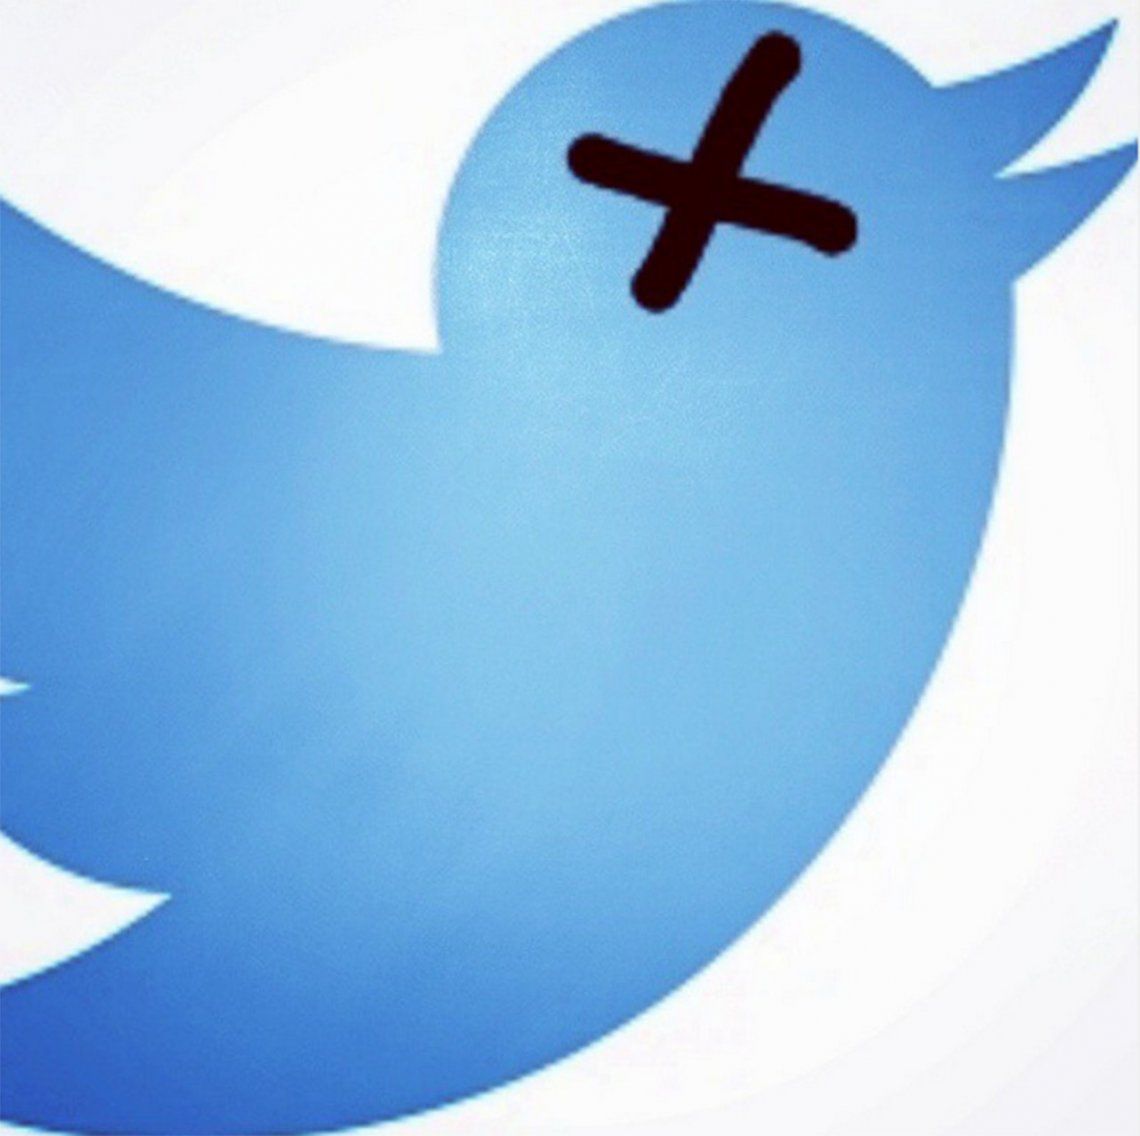 Twitter registró una caída en medio de una jornada caliente en las redes sociales